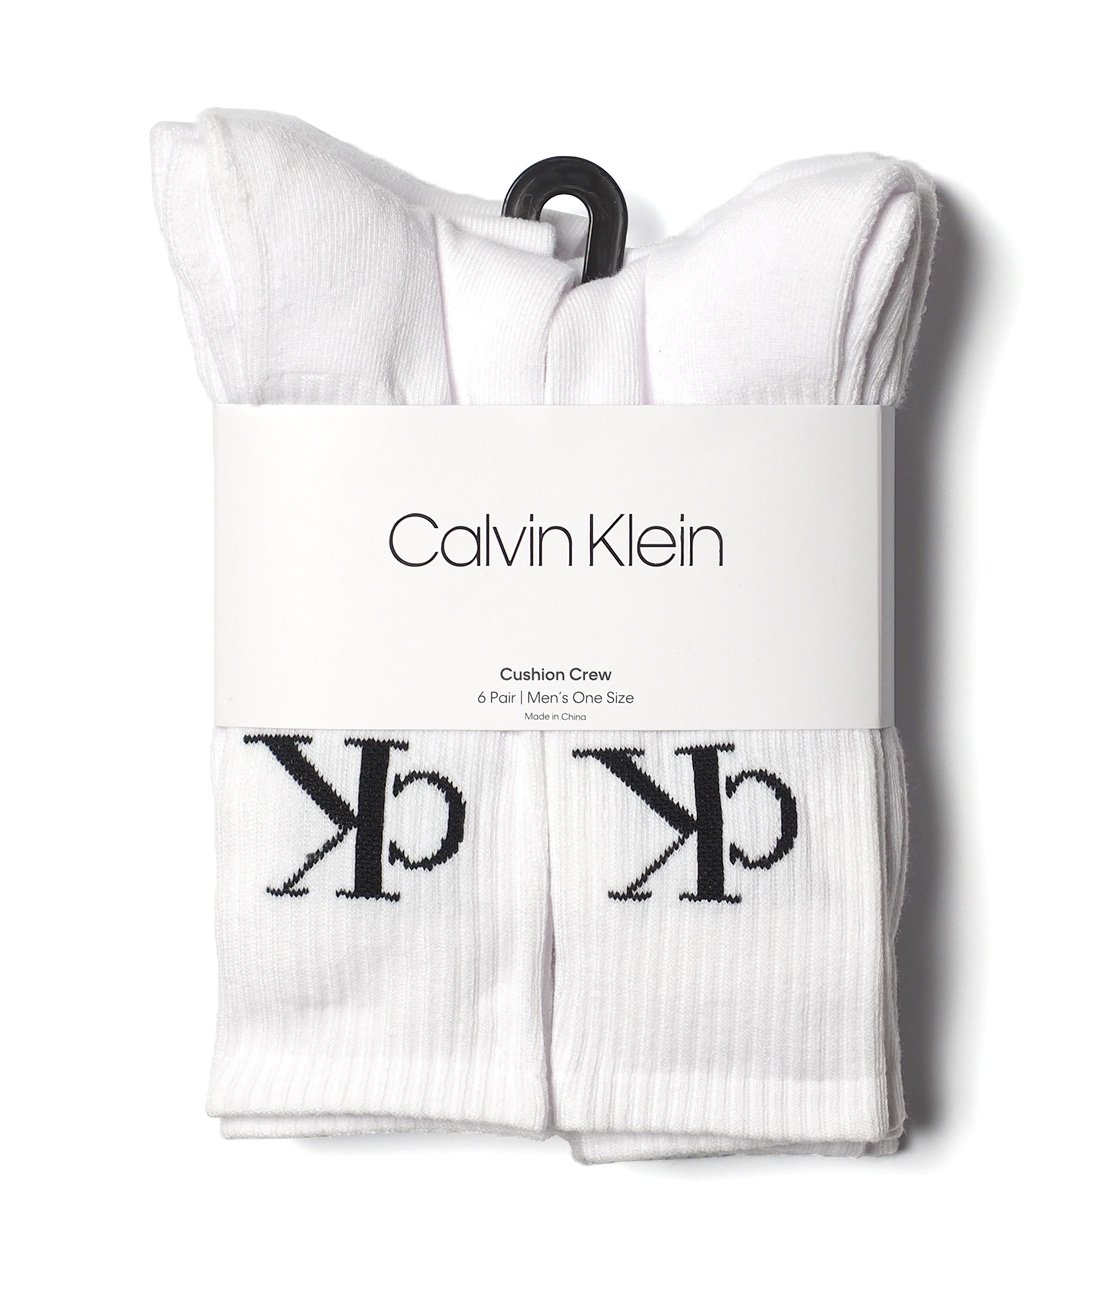 Calvin Klein】6P CREW SOCKS - WHITE 靴下 ソックス 6足組 カルバン